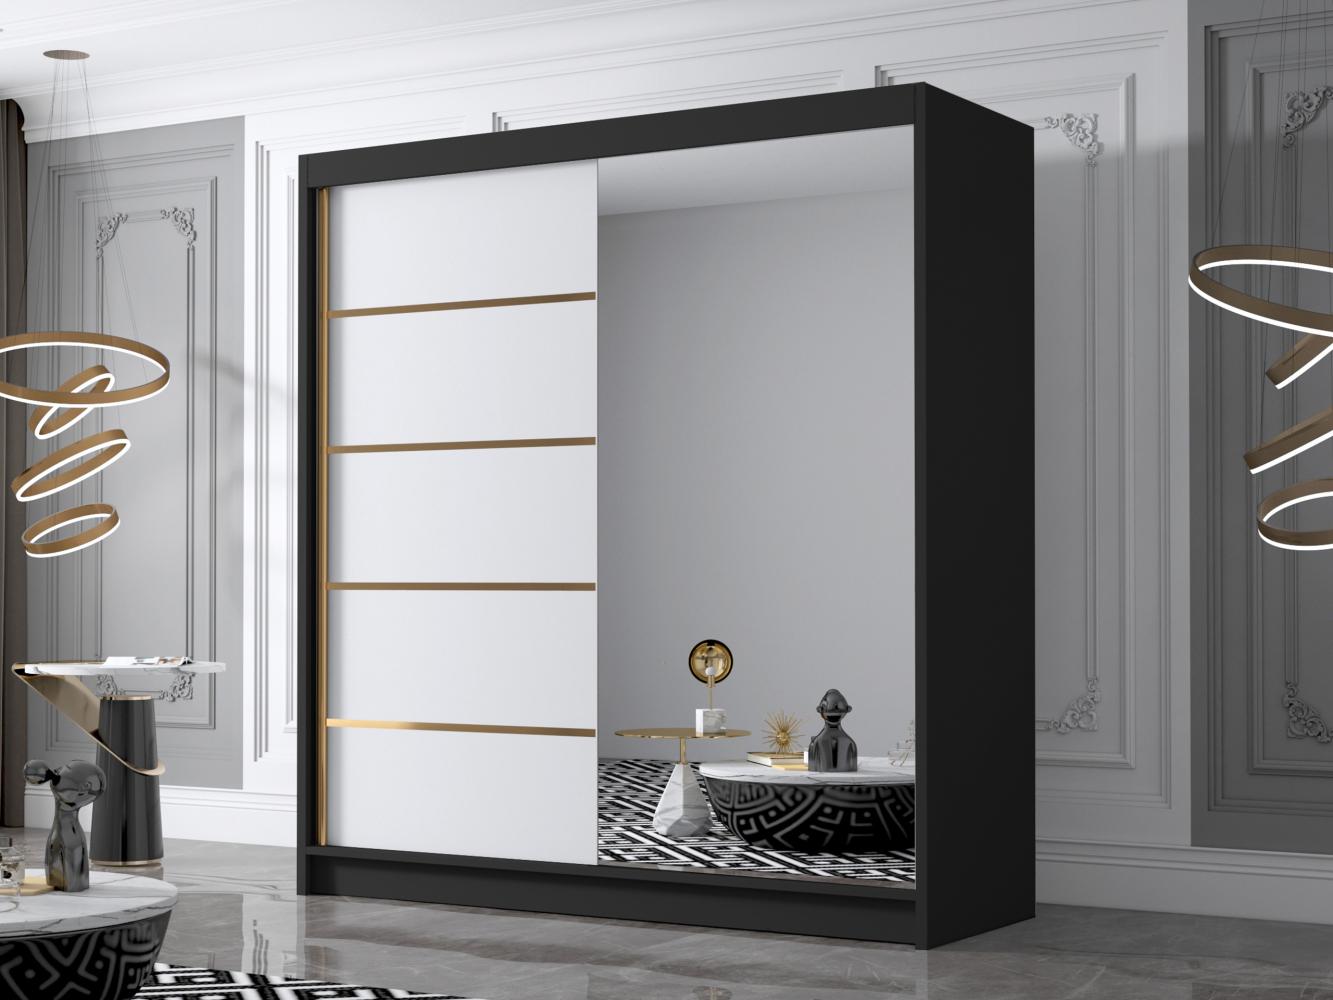 Kleiderschrank mit Goldverzierung Bajpra III mit zwei Schwebetüren, Spiegel (Farbe: Schwarz / Weiß) Bild 1